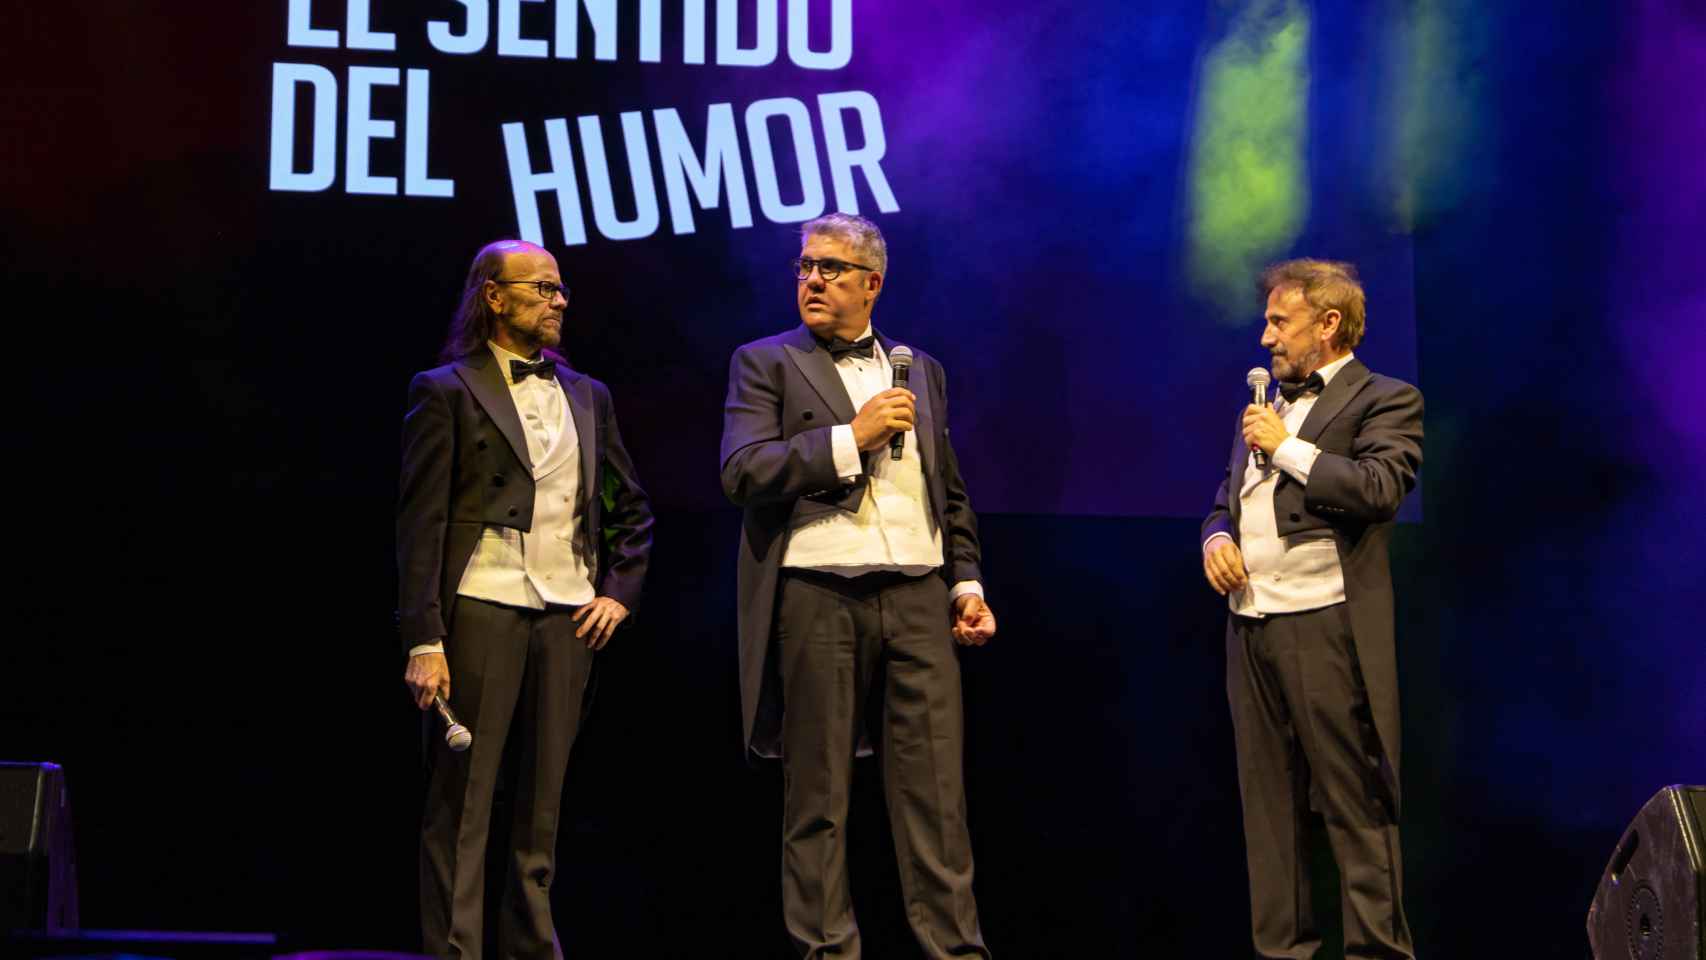 Santiago Segura, Florentino Fernández y José Mota en la actuación de anoche.